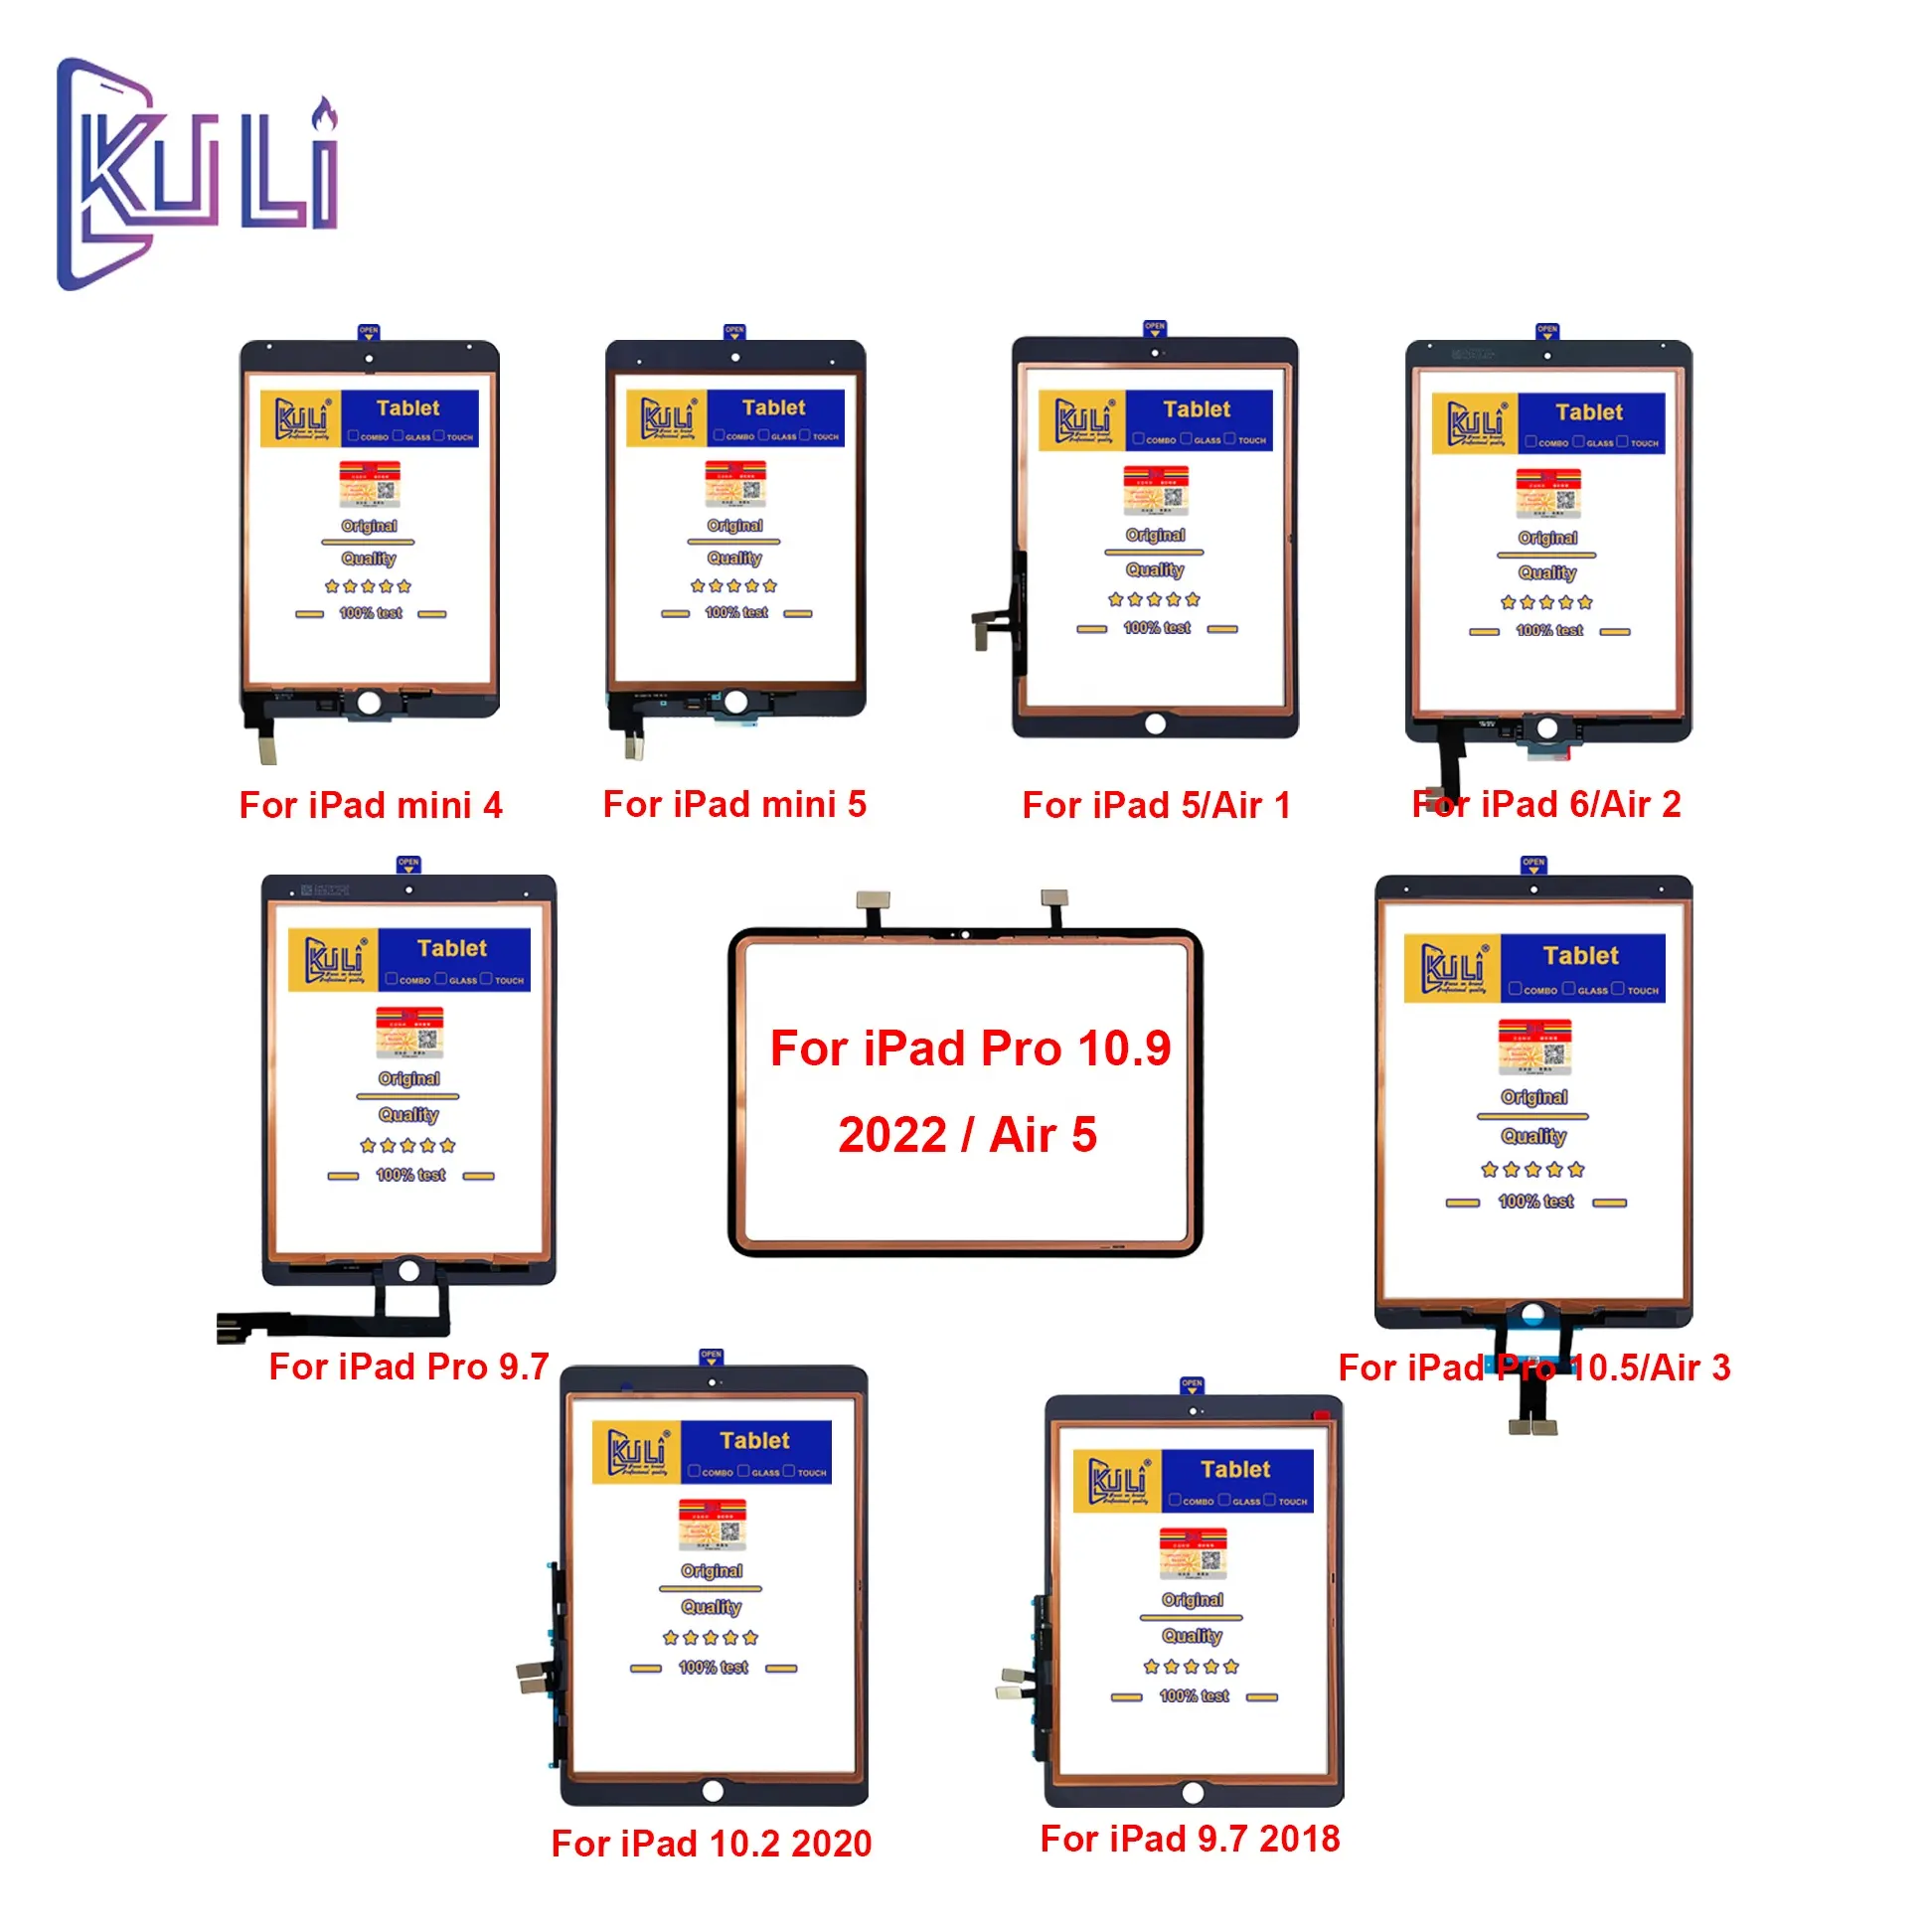 KULIオリジナルオールカッパータッチOCAガラスディスプレイ画面iPadProミニエアシリーズモバイルフラットパネルLCDタッチOCAデジタイザー